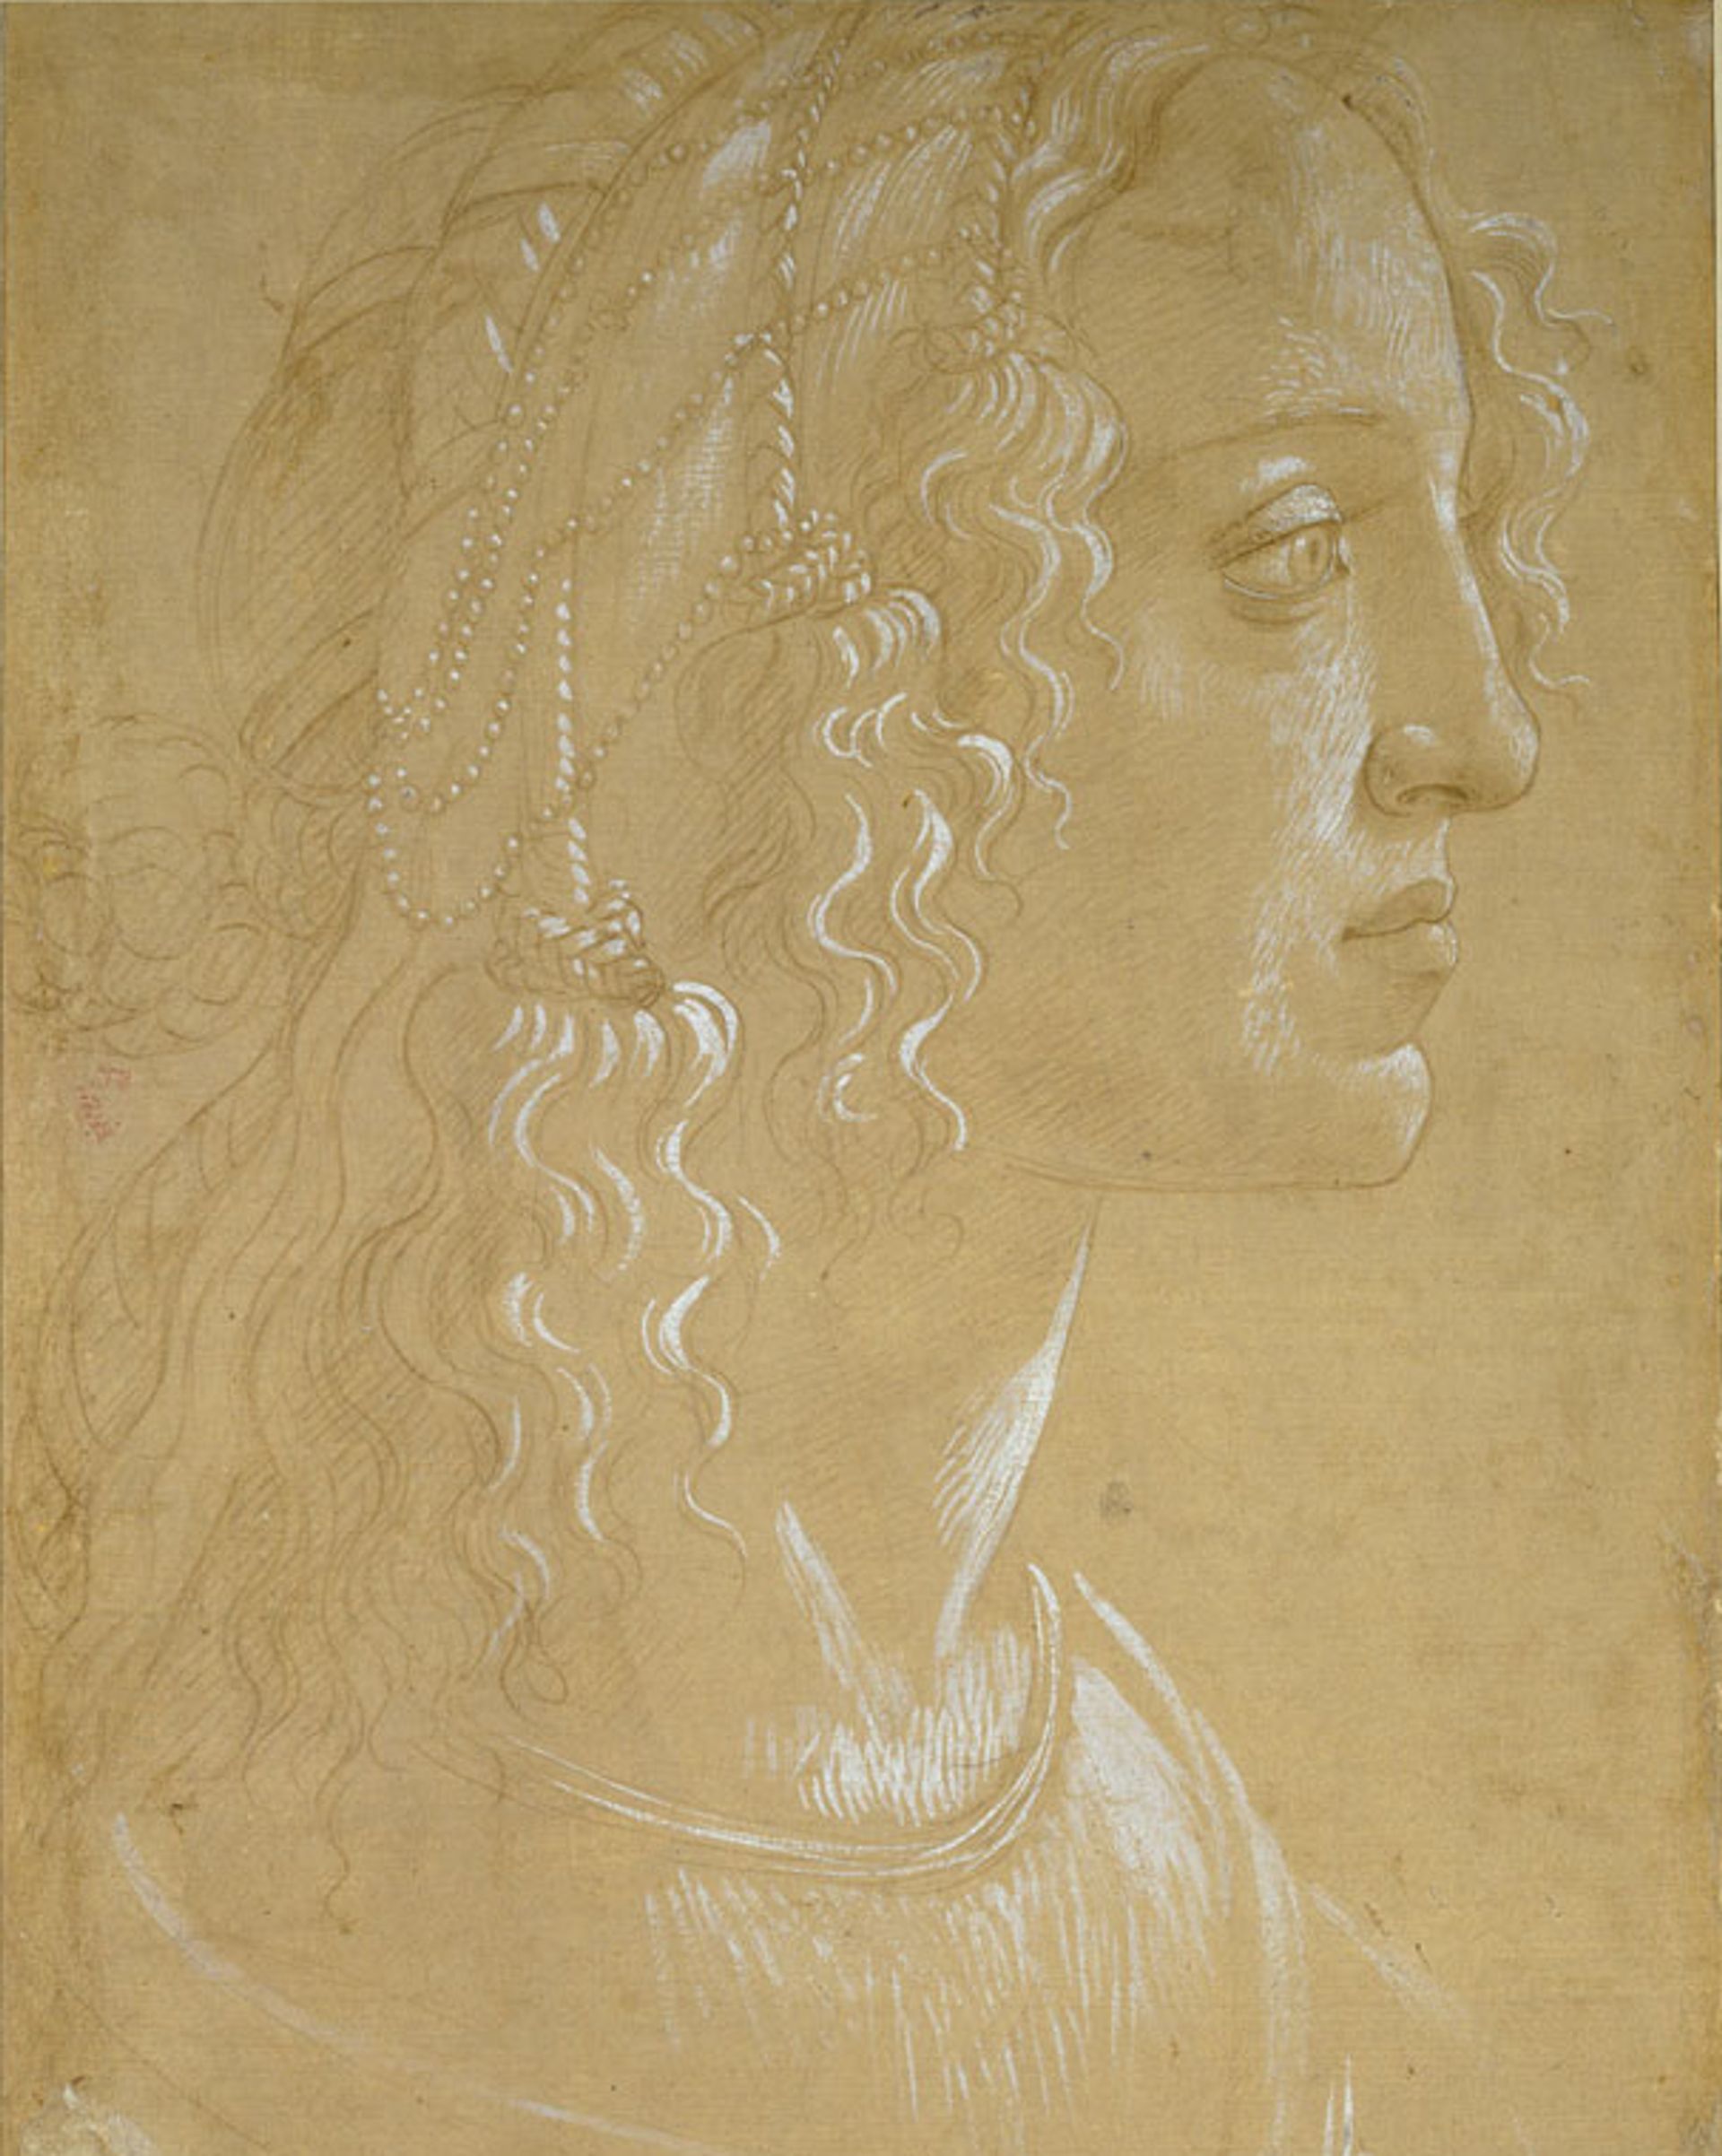 Sandro Botticelli's Study of the head of a woman in profile "La Bella Simonetta" (around 1485) was drawn using white gouache on light-brown prepared paper ©️ Ashmolean Museum